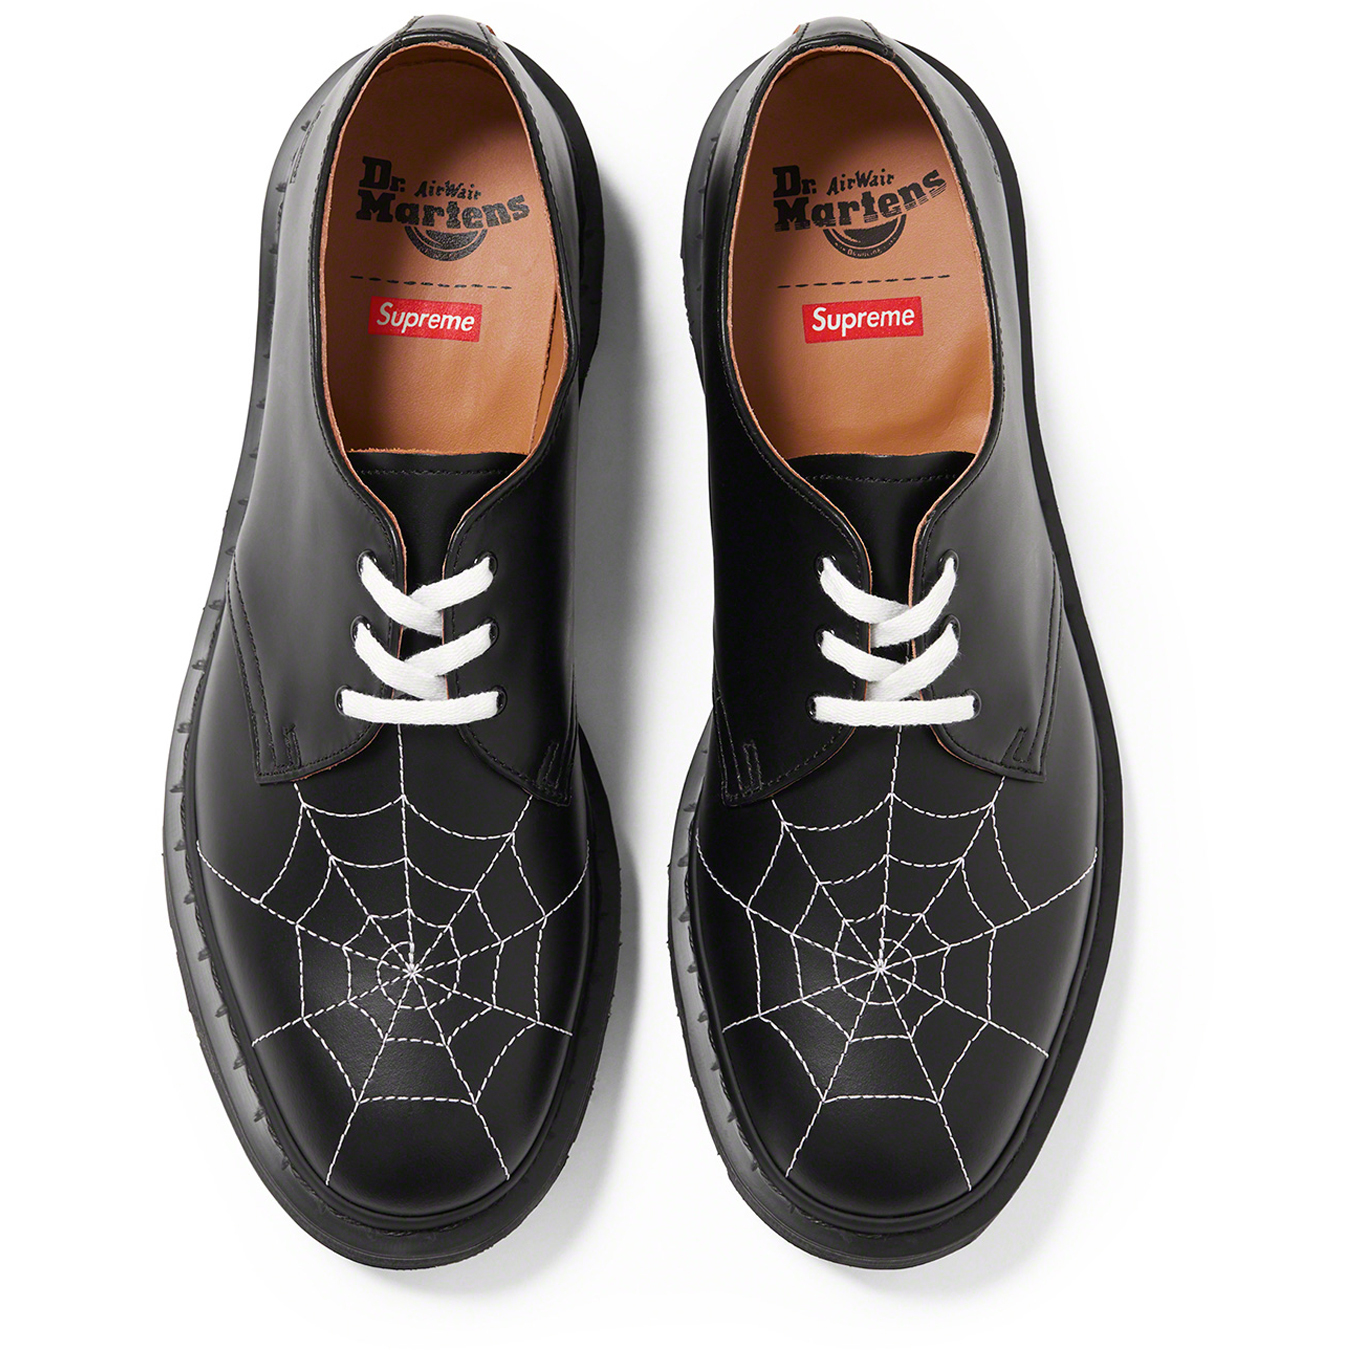 Supreme Supreme®/Dr. Martens Spiderweb 3-Eye Shoe